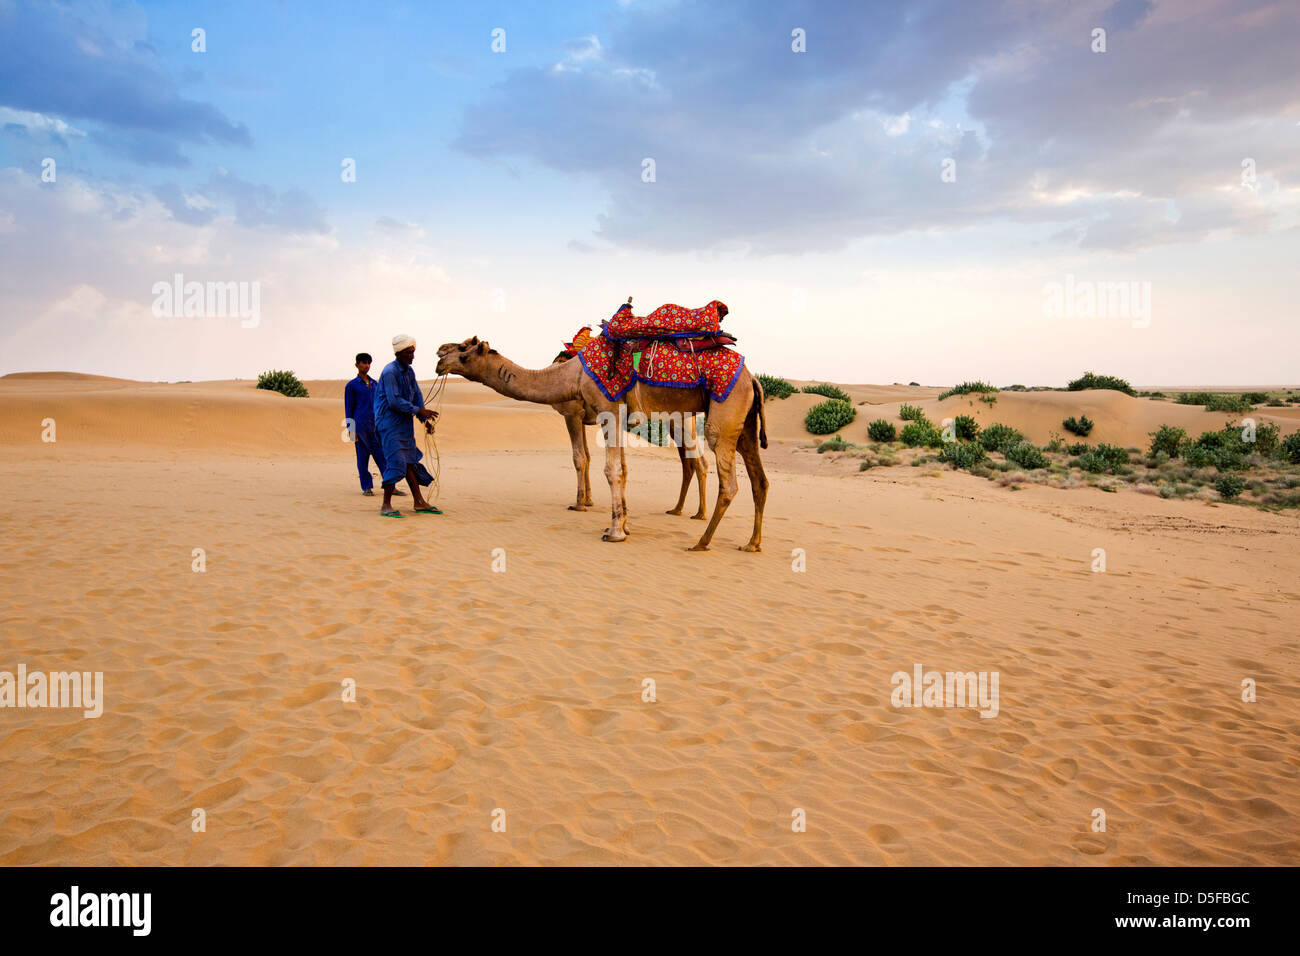 Dos hombres de pie con camellos en un desierto, el desierto de Thar, Jaisalmer, Rajasthan, India Foto de stock